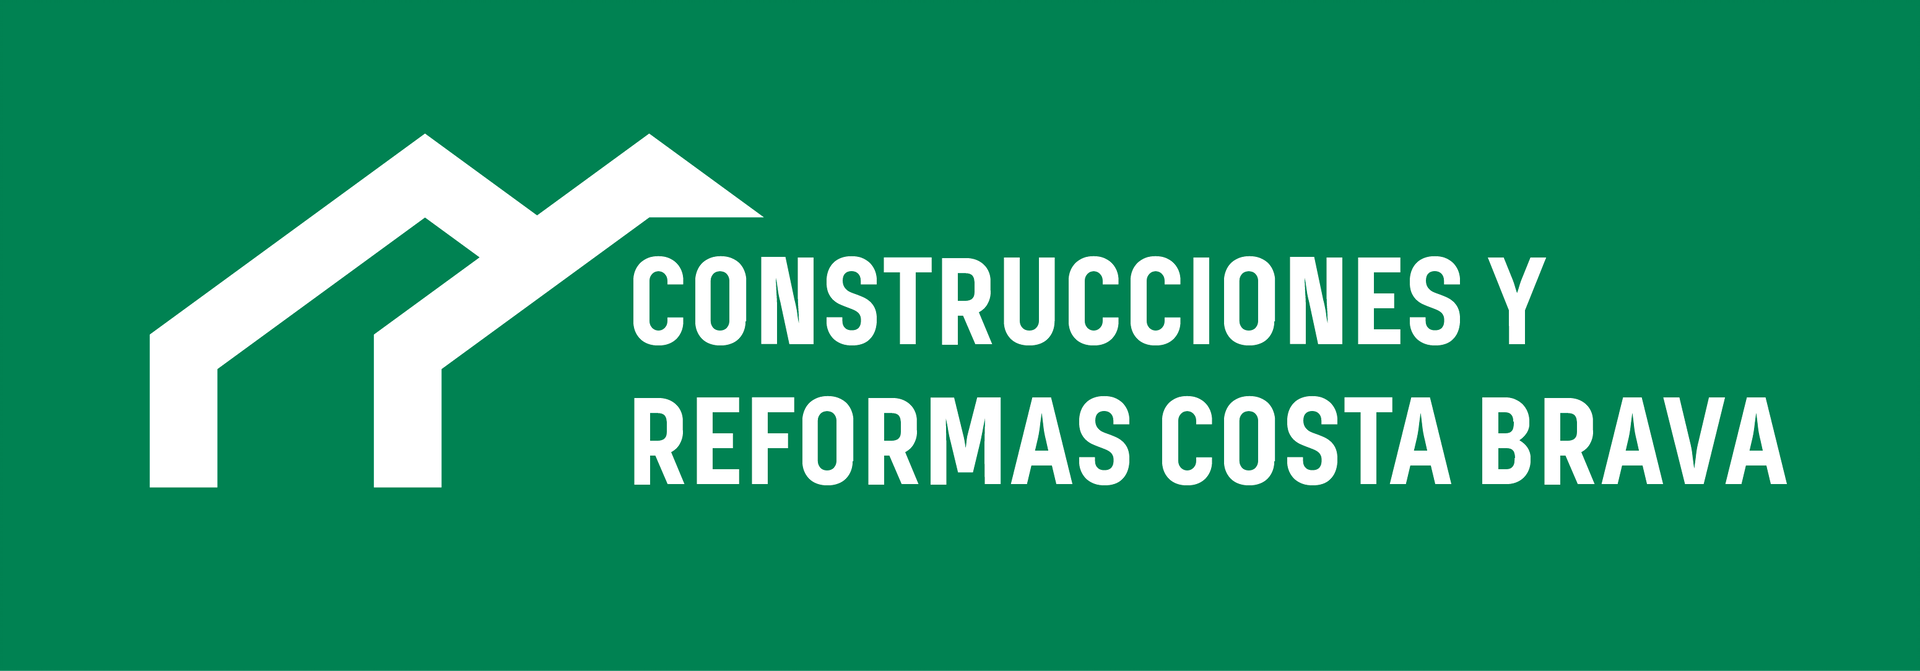 CONSTRUCCIONES Y REFORMAS COSTA BRAVA